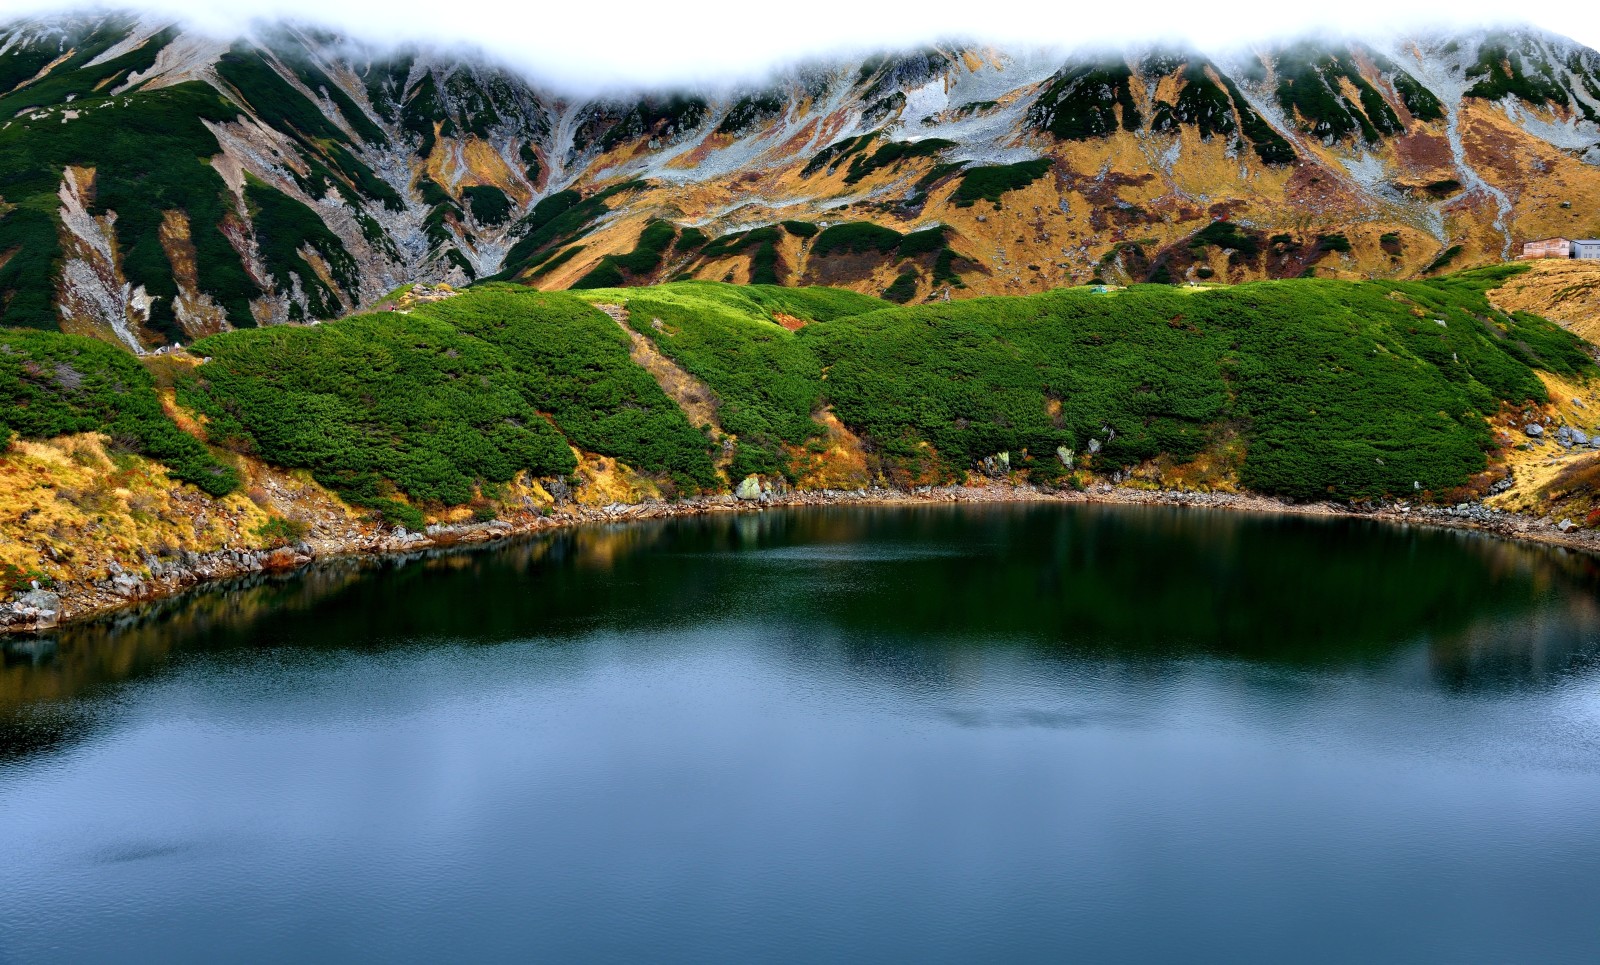 ธรรมชาติ, ทะเลสาป, ภูเขา, ประเทศญี่ปุ่น, ภาพถ่าย, โทะยะมะ